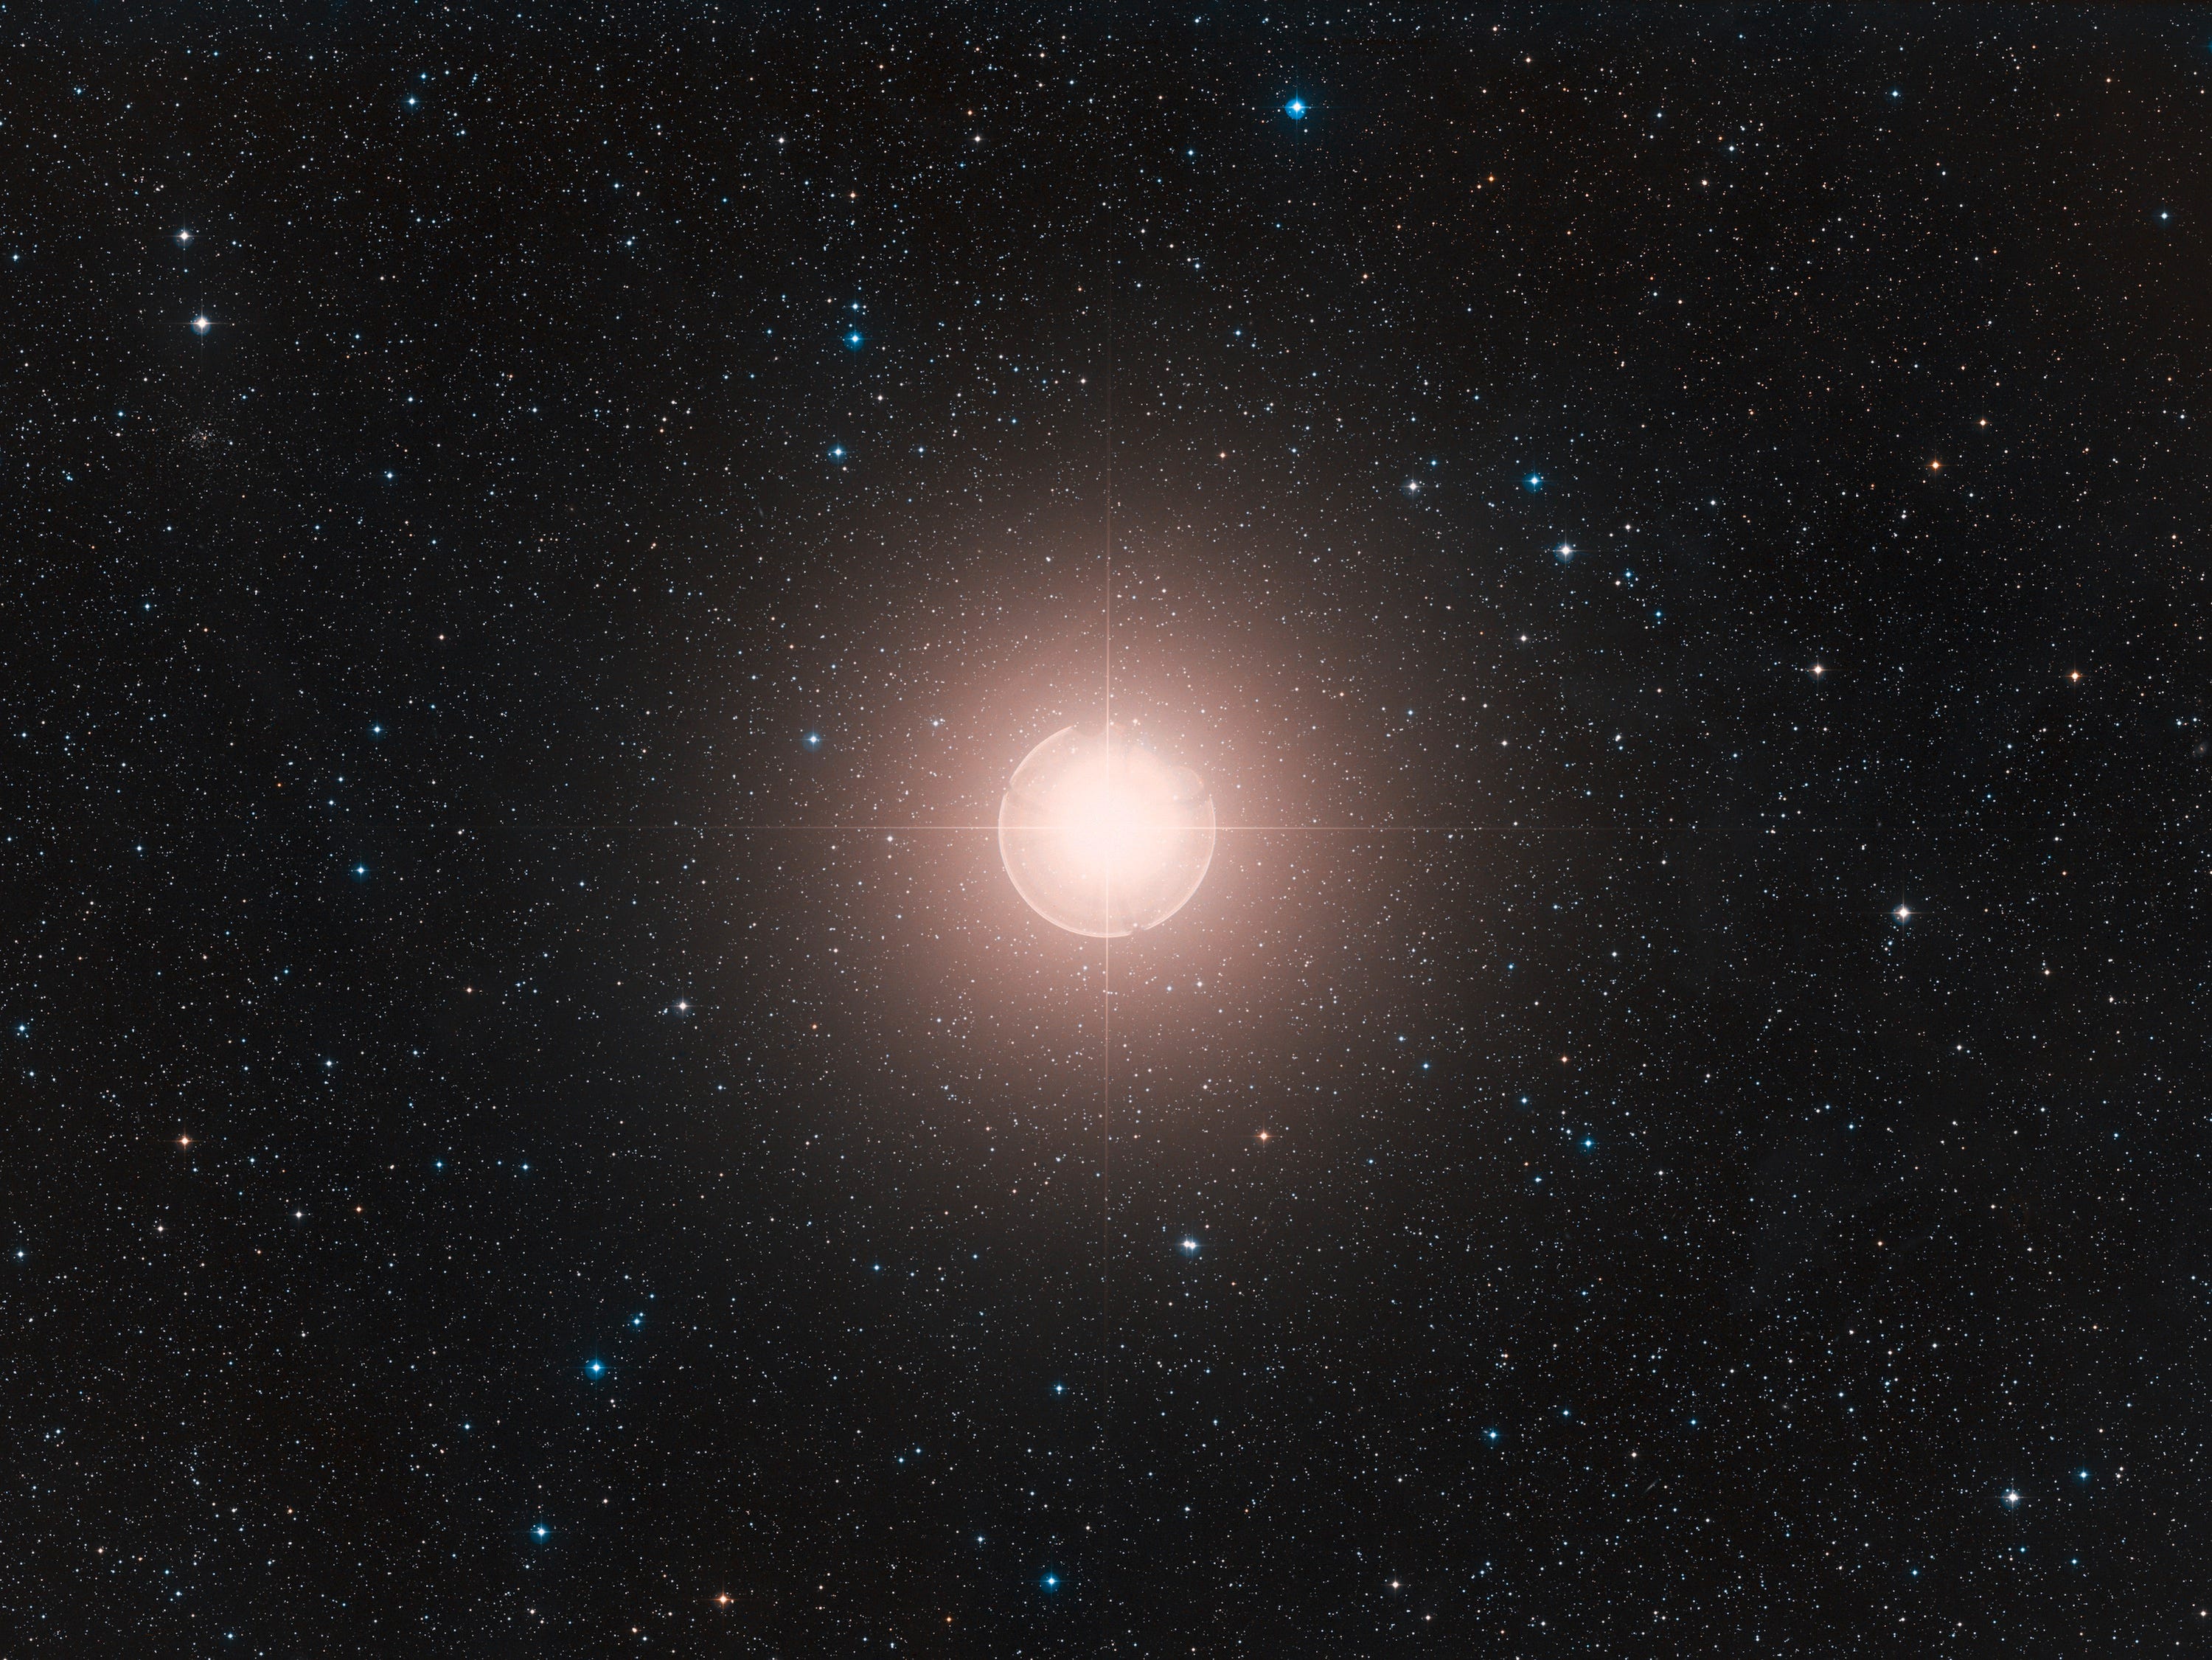 Ein von der Erde aus aufgenommenes Bild von Beteigeuze zeigt, wie es hell im Kontrast zu anderen Sternen am Firmament leuchtet.